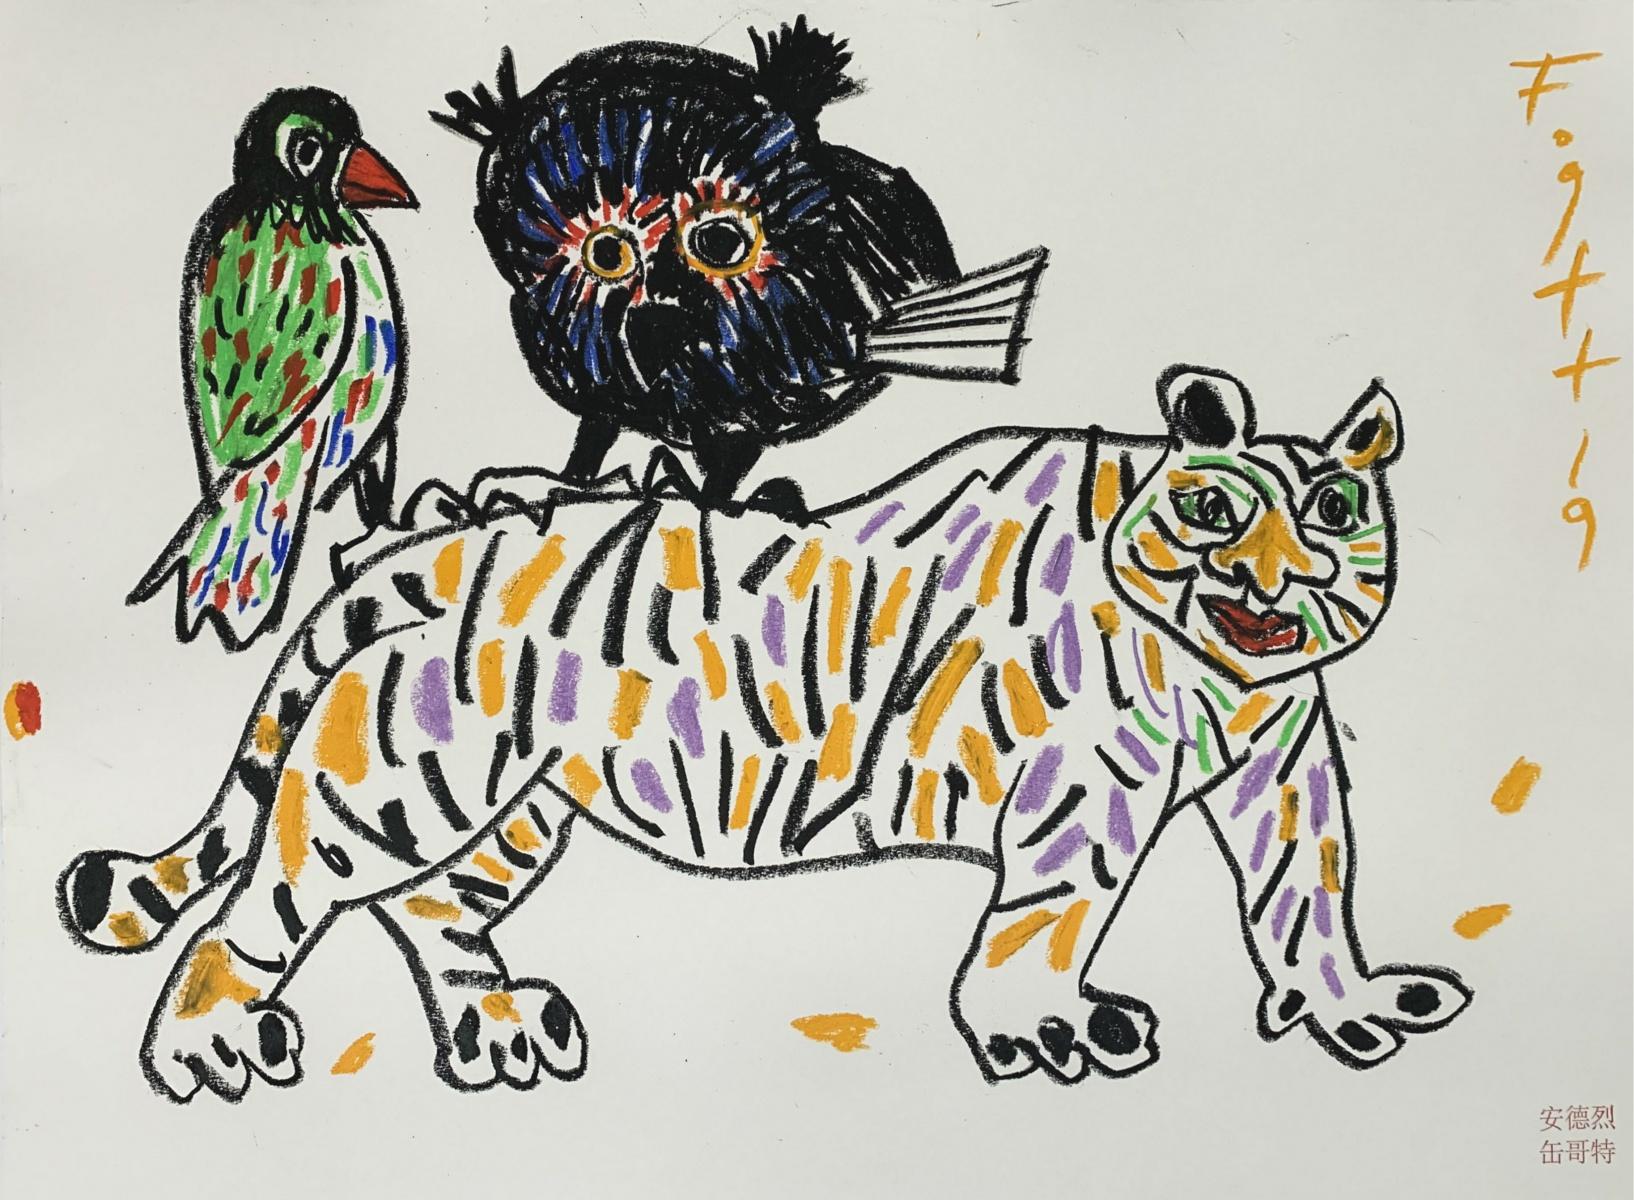 Tiger, Eule, ... - Polnische Masterly Of Art, Pastell, Tiere, Chinesisches Zodiac Zeichen